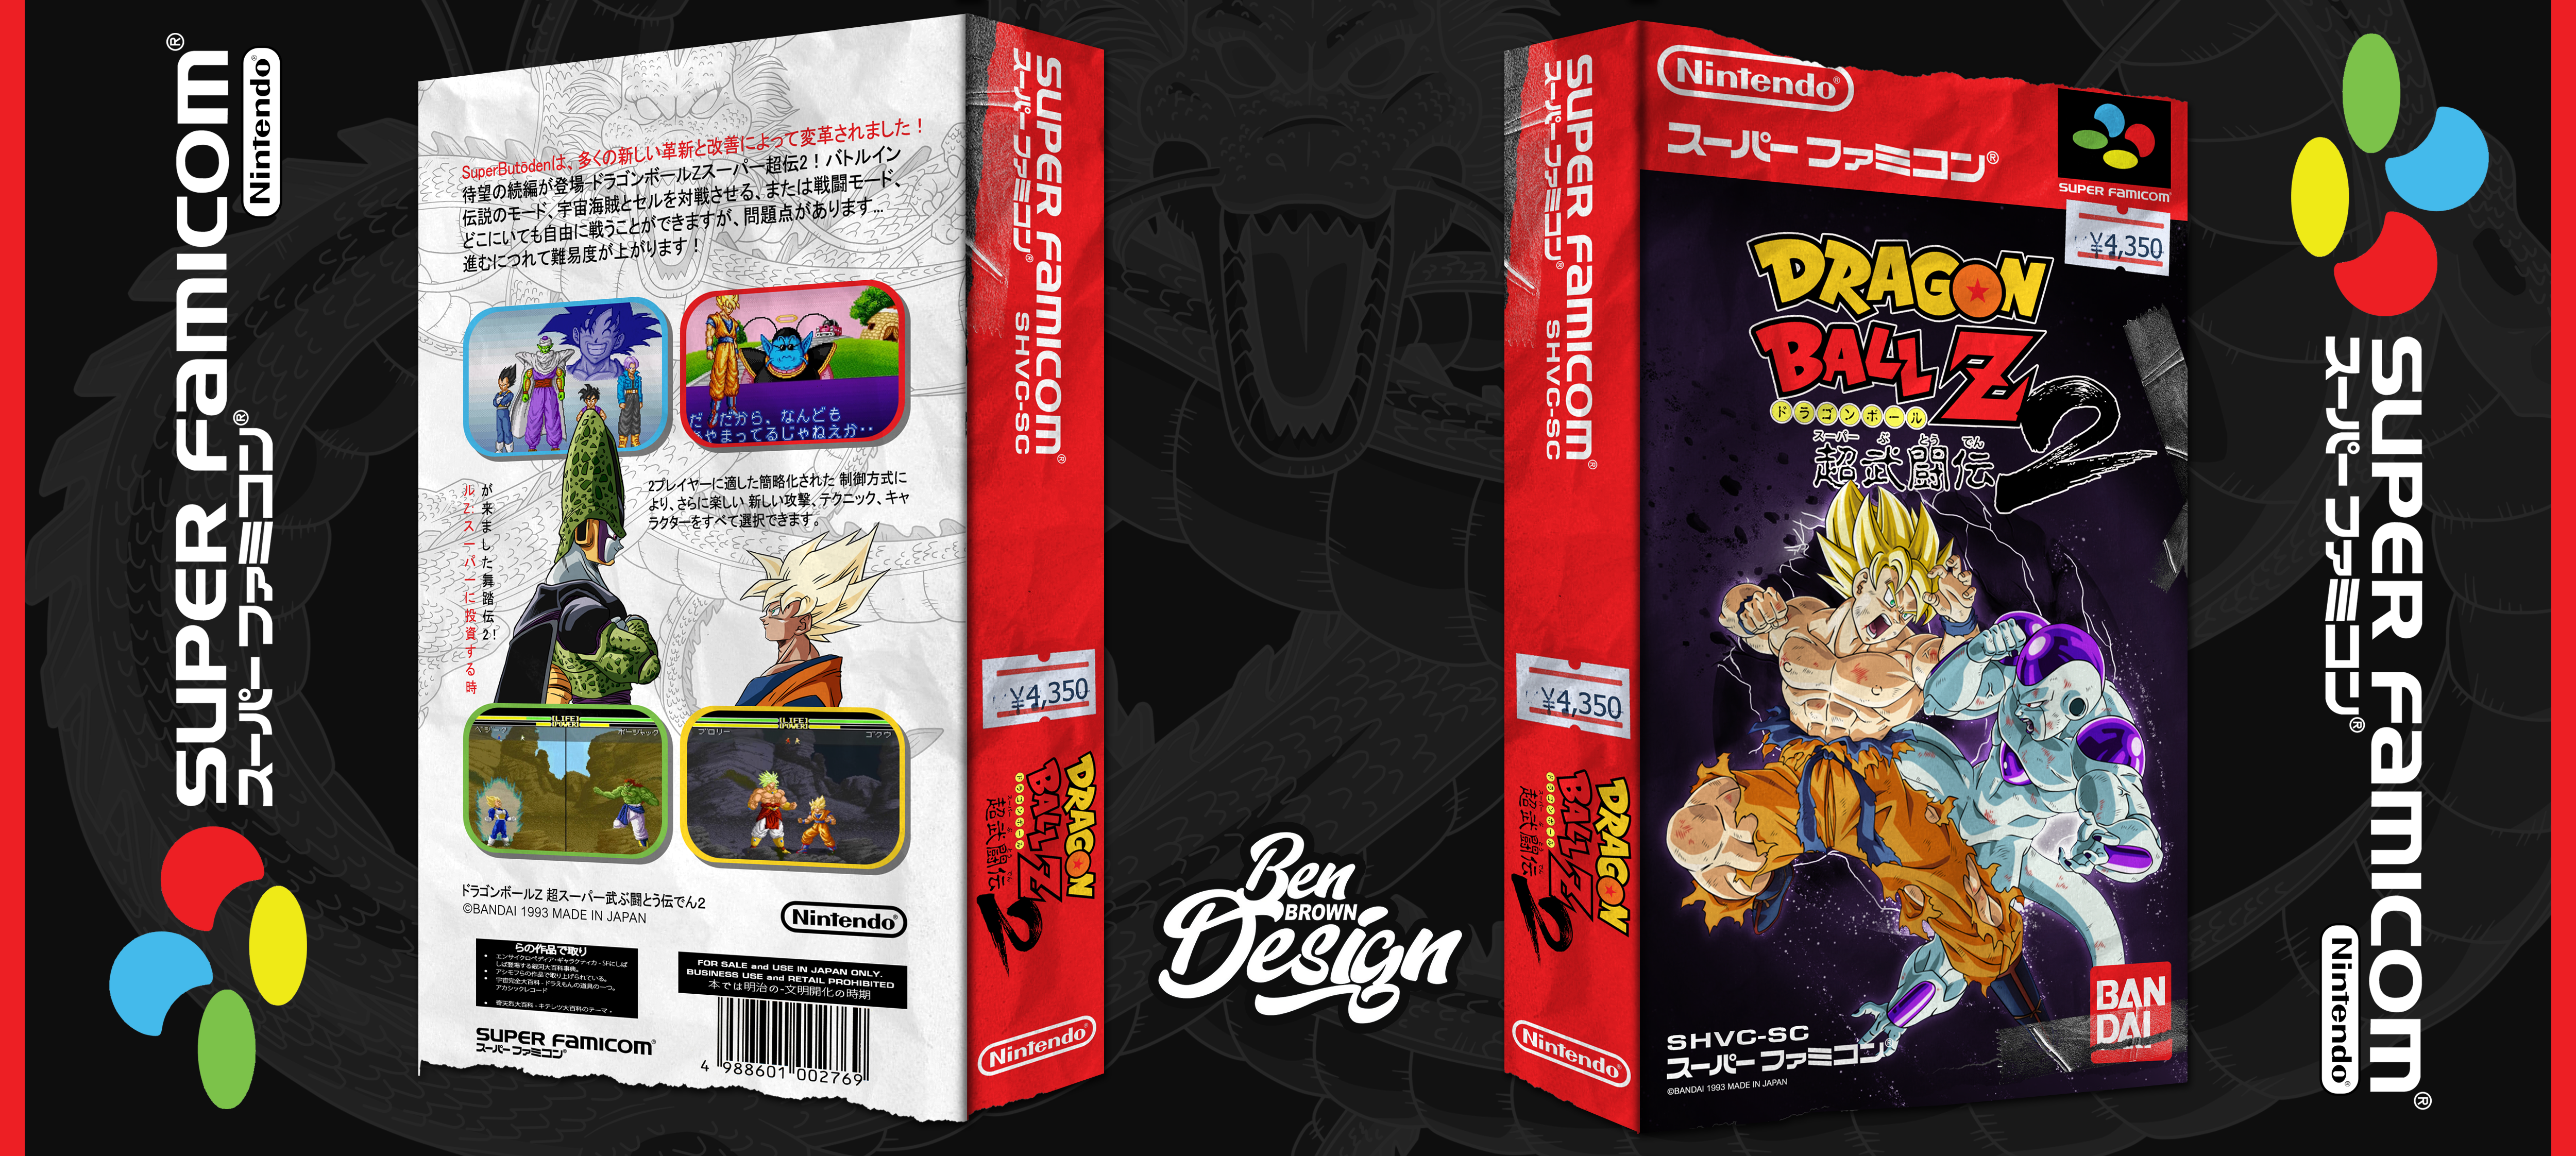 Dragon Ball Z: Super Butōden 2 box cover